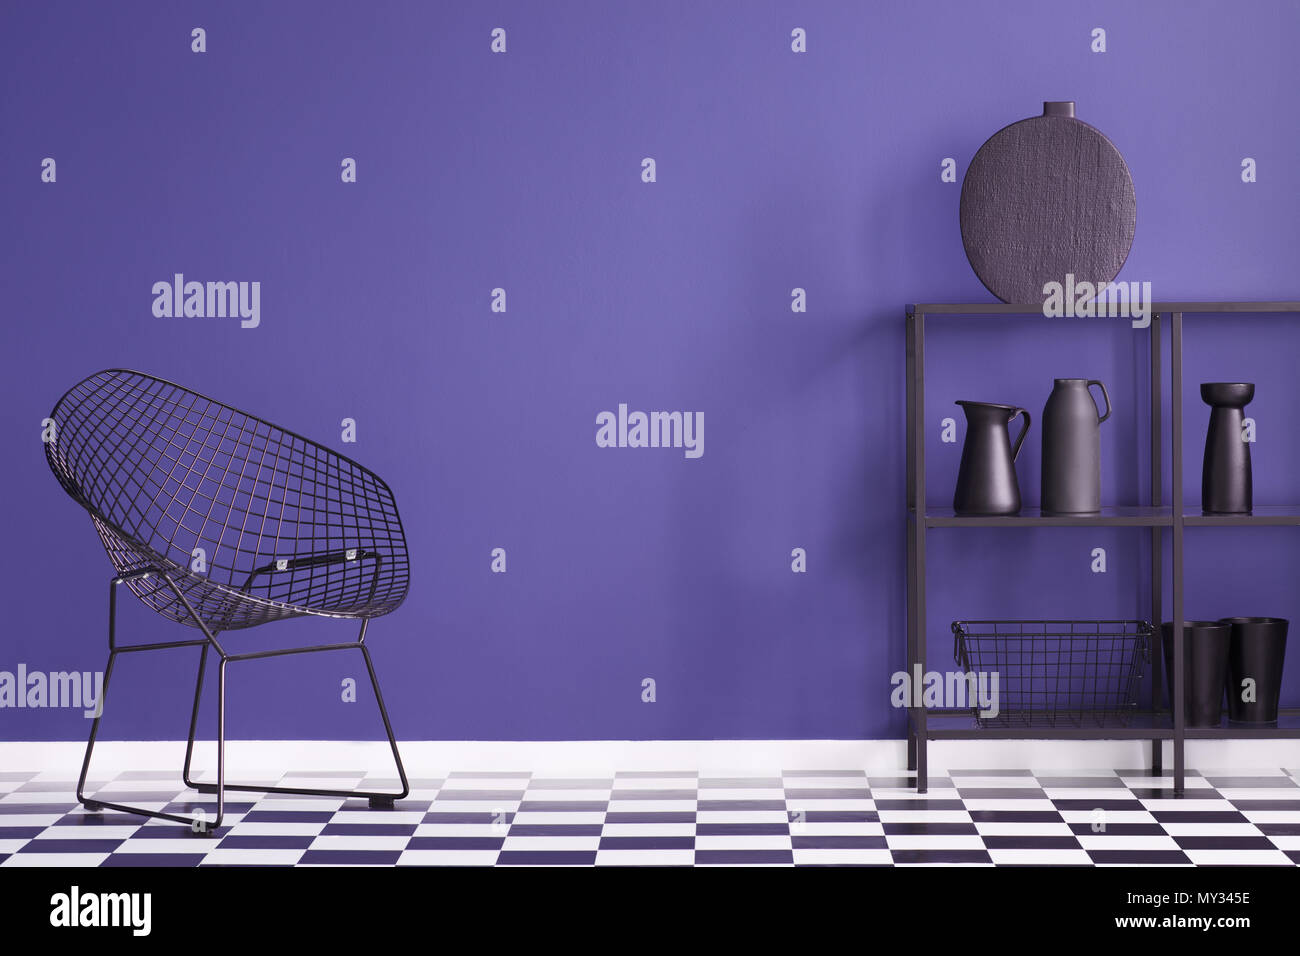 Fauteuil noir sur sol en damier en violet salon intérieur avec vase sur une étagère Banque D'Images